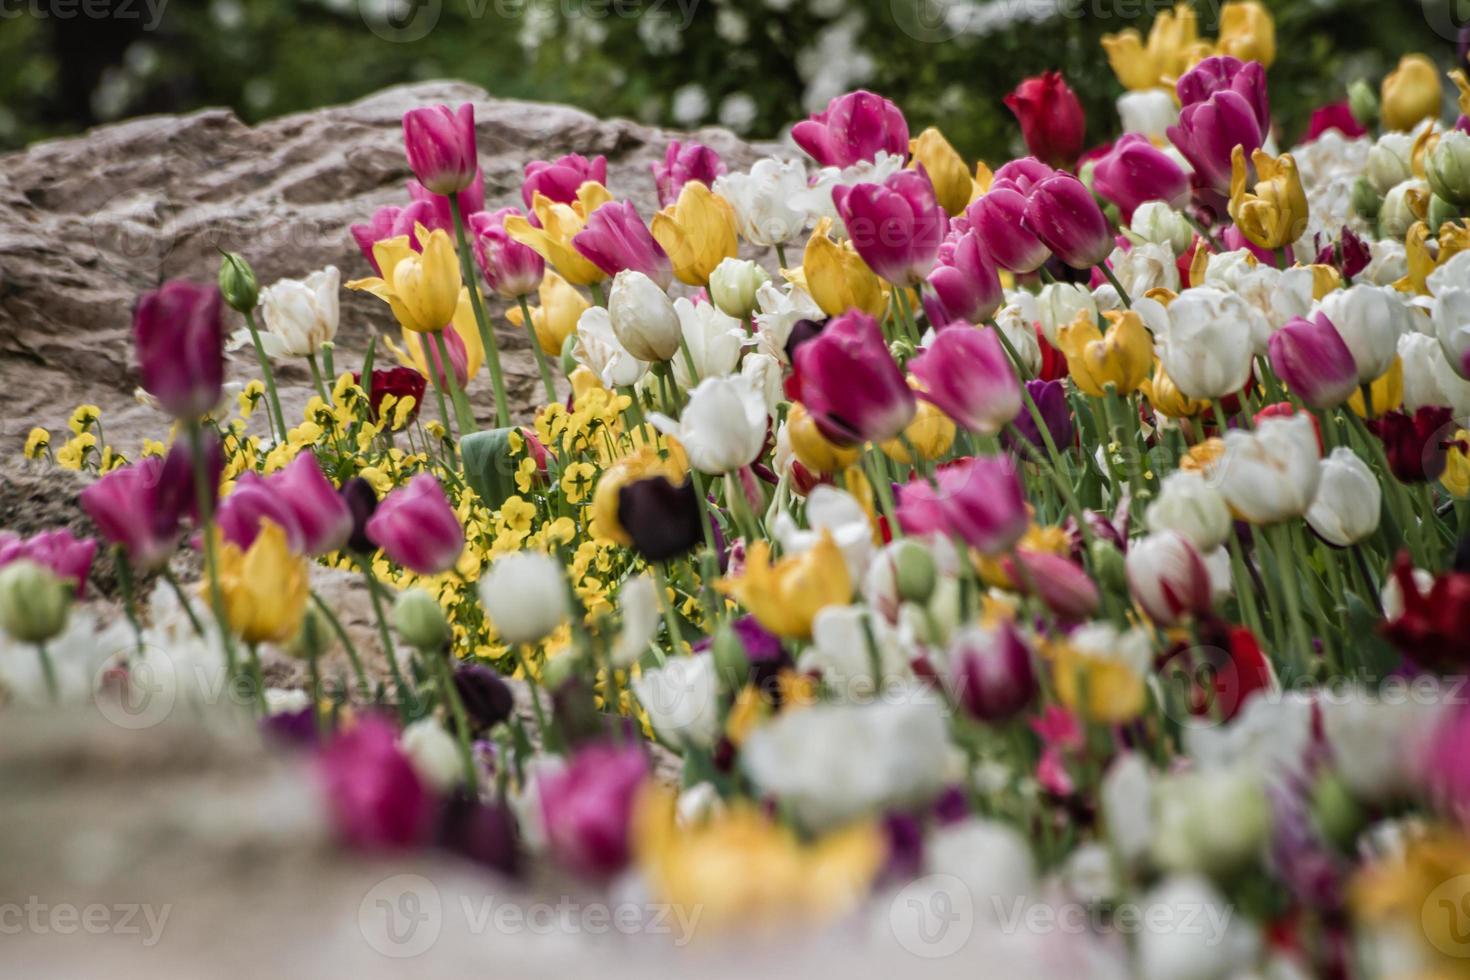 belles tulipes colorées dans un jardin verdoyant d'istanbul photo